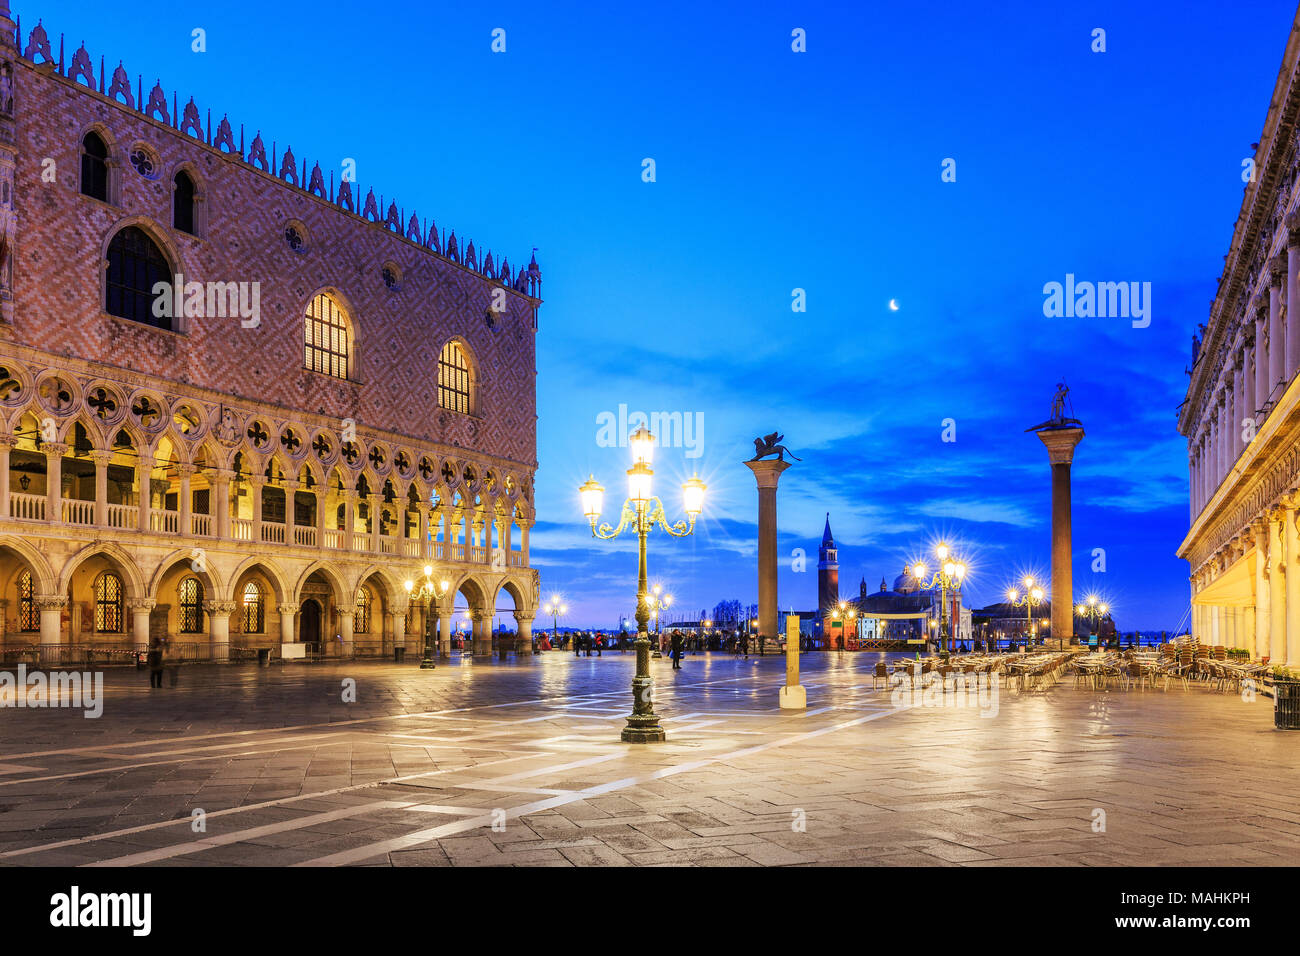 Venise, Italie. La Place St Marc et du Palais des Doges avant le lever du soleil. Banque D'Images